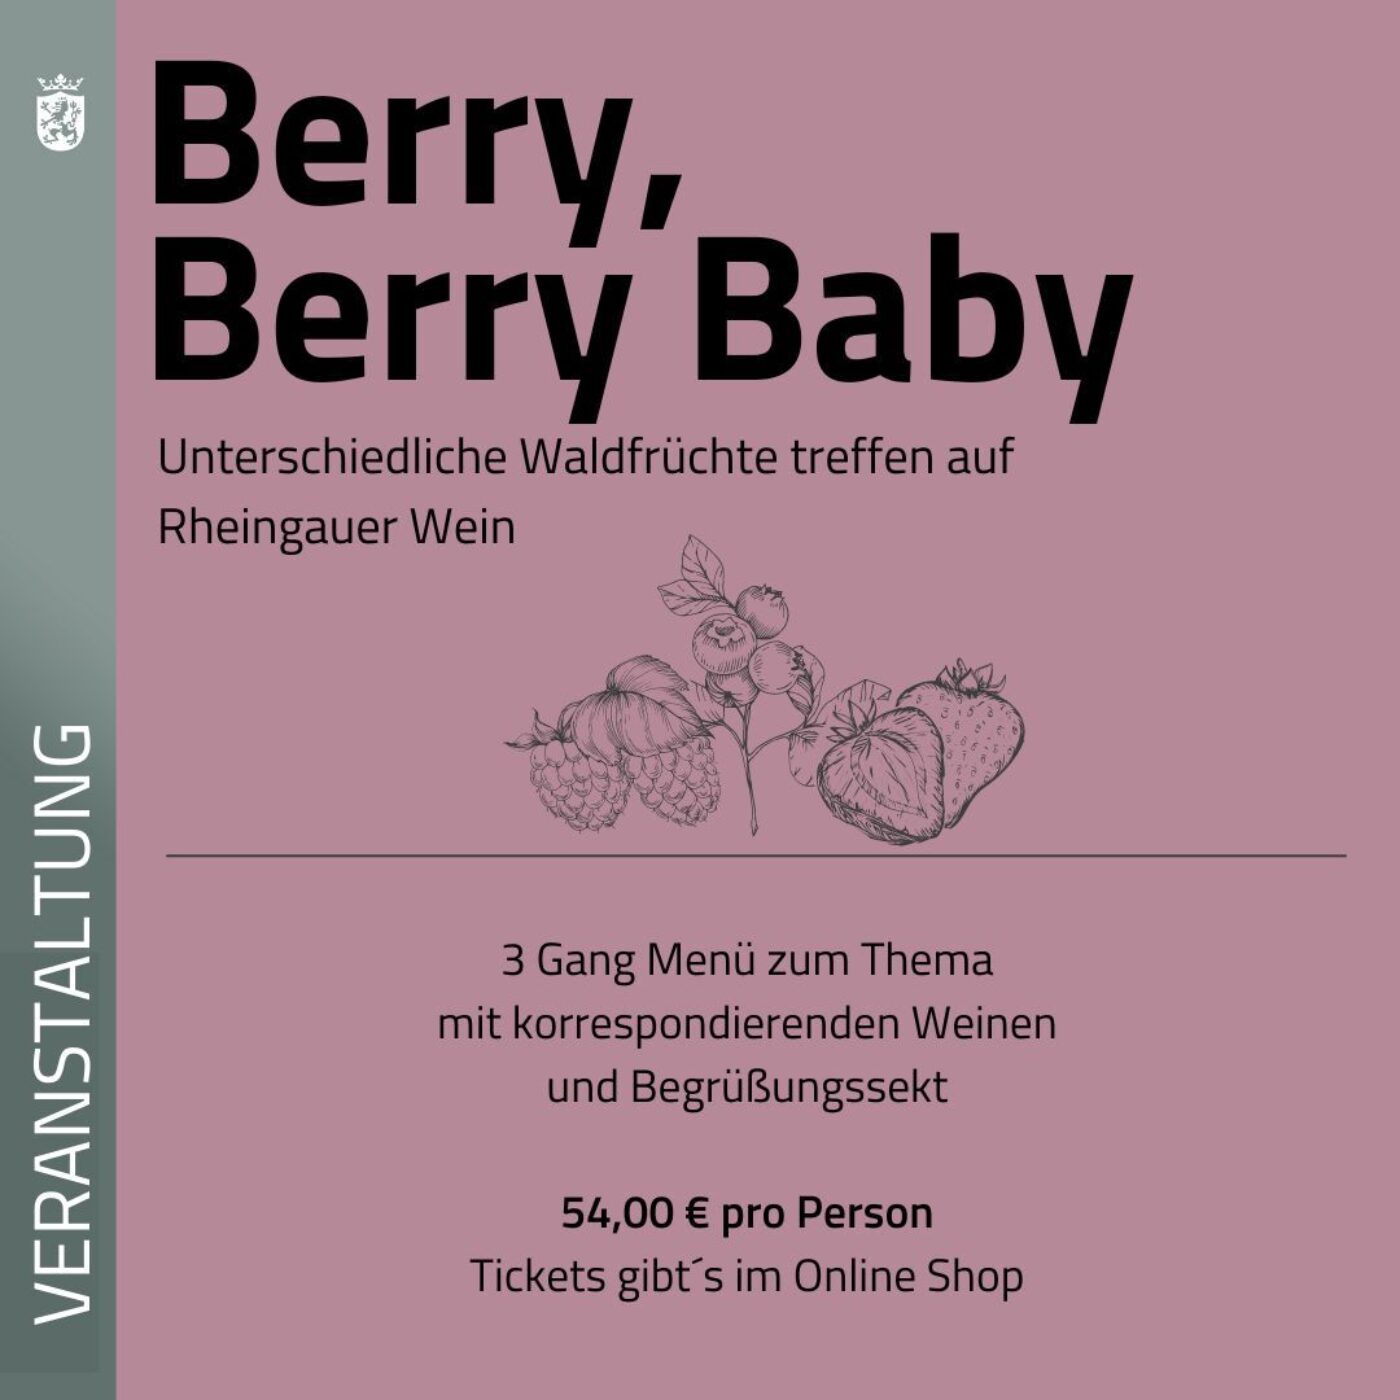 BERRY BERRY BABY - Wein & Waldfrucht"